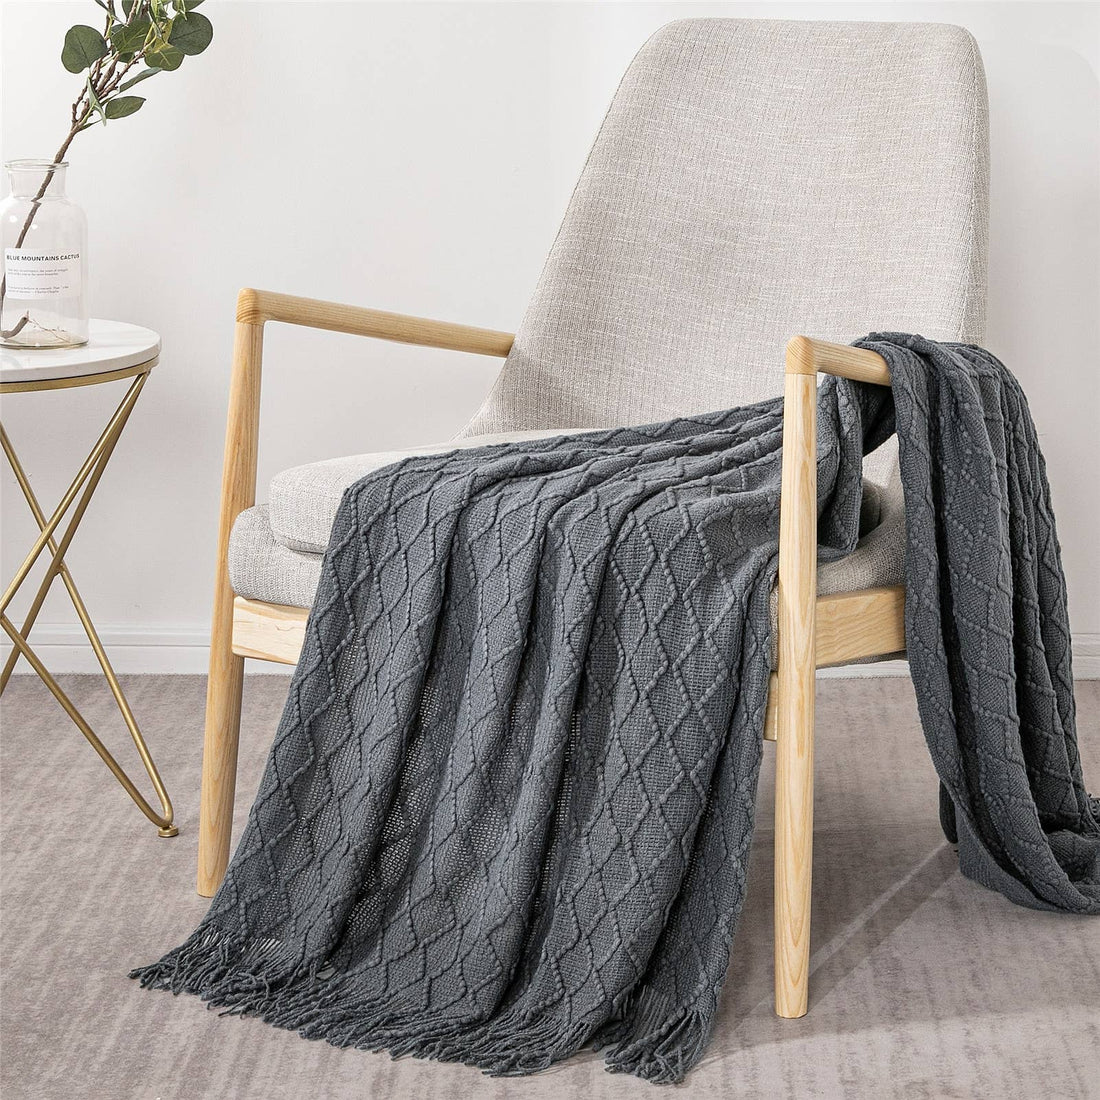 Textured Wavy Design 50x60 Inch Throw Blanket: Grey